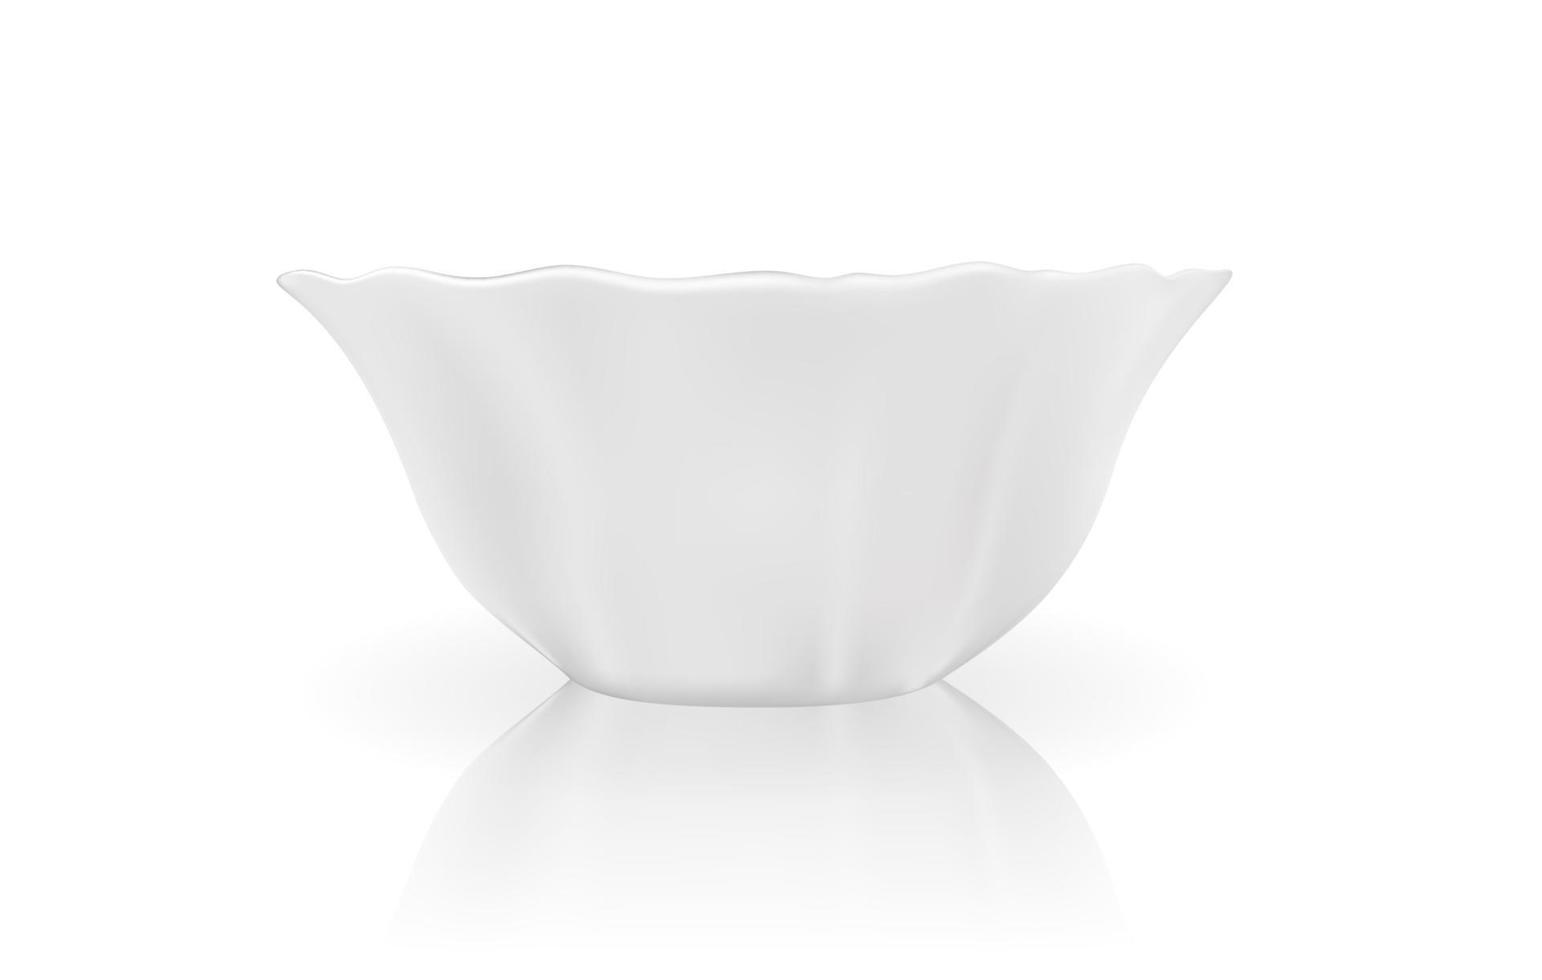 realistisch 3D-model van witte schotel. vector illustratie